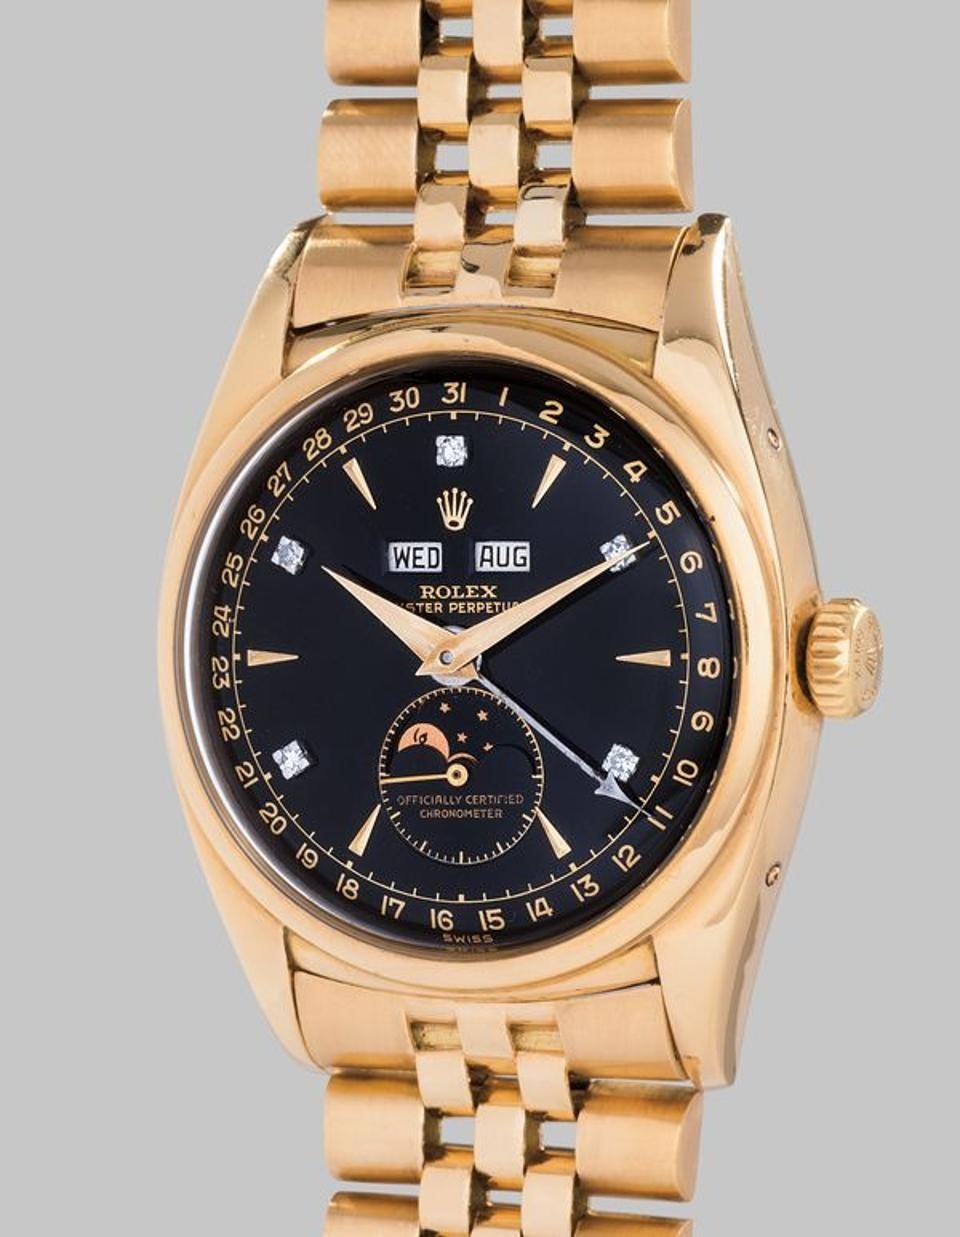 Đồng hồ Rolex của vua Bảo Đại, mũ quan nhất phẩm triều Nguyễn, xe kéo tay của Hoàng thái hậu Từ Minh... đều có mức giá “khủng” trên các sàn đấu giá quốc tế. Ảnh: TL